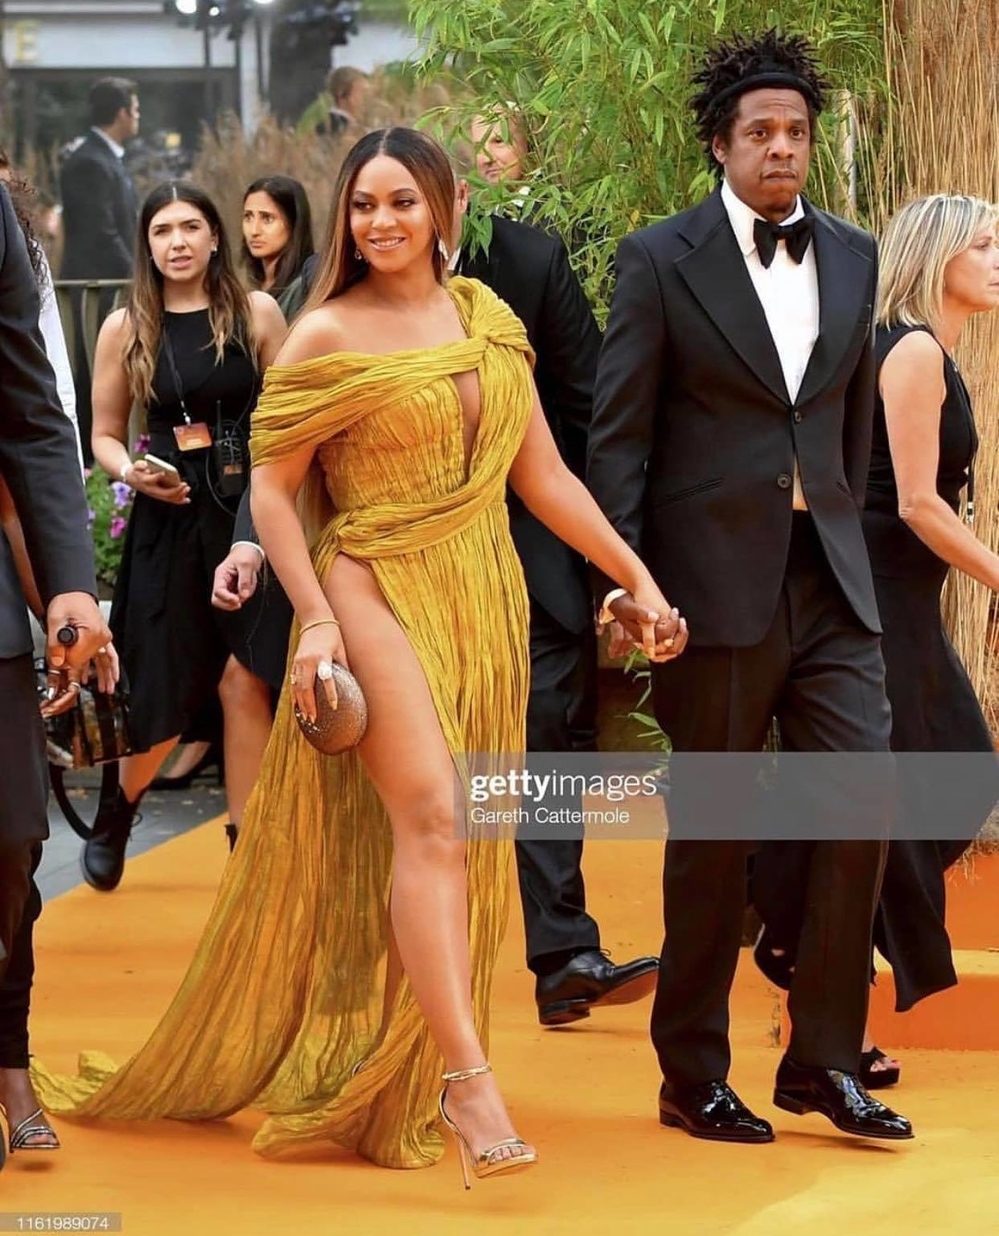  
Beyonce khéo léo chọn clutch cầm tay bản tròn và giày cao gót ánh kim mix với trang phục. Beyonce và Jay Z luôn hạnh phúc và quan tâm nhau trong hơn 11 năm kết hôn.